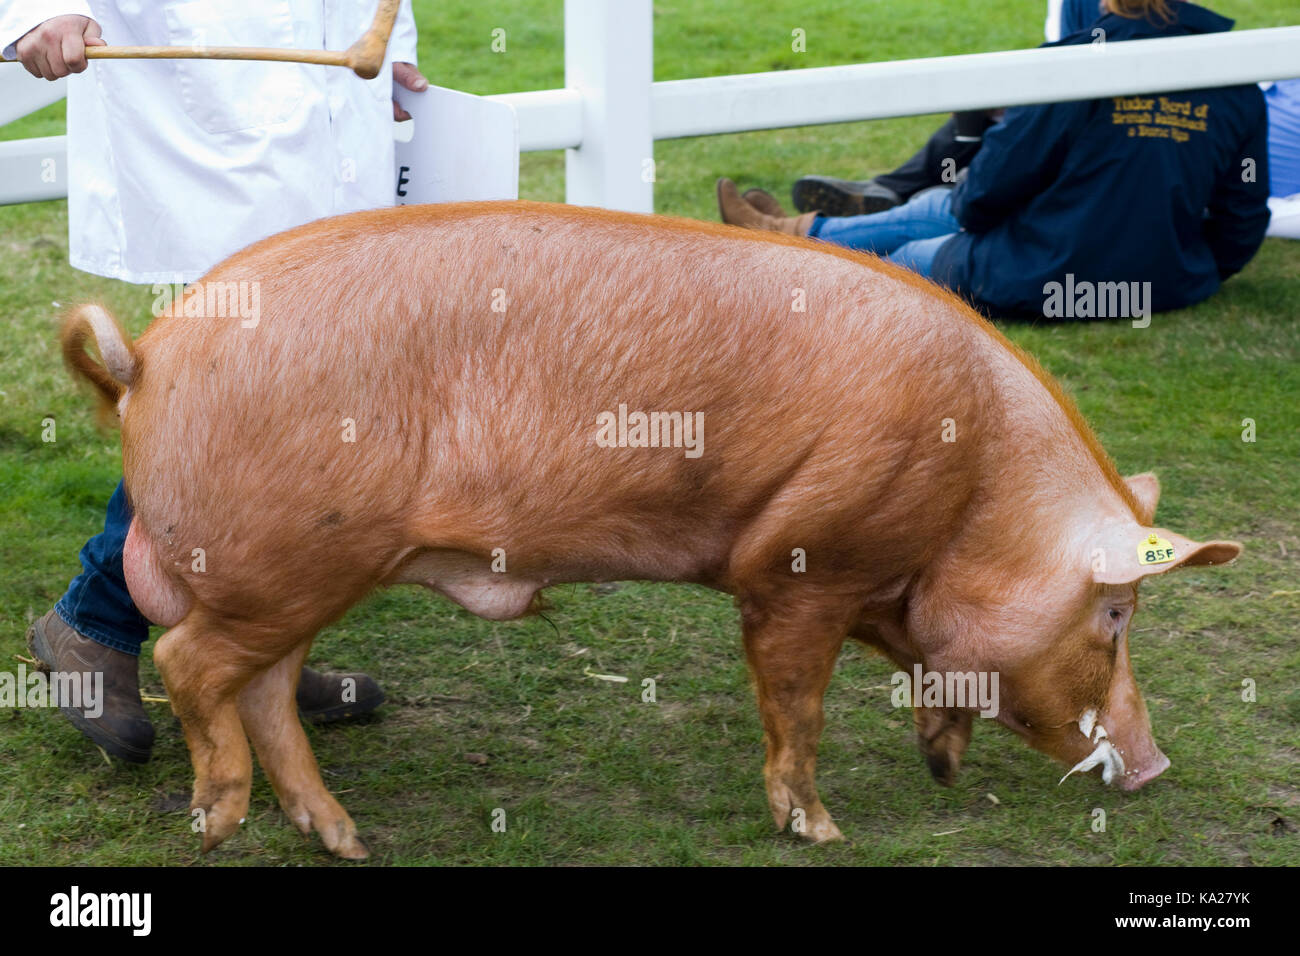 Sus scrofa domesticus, Tamworth pig Stock Photo